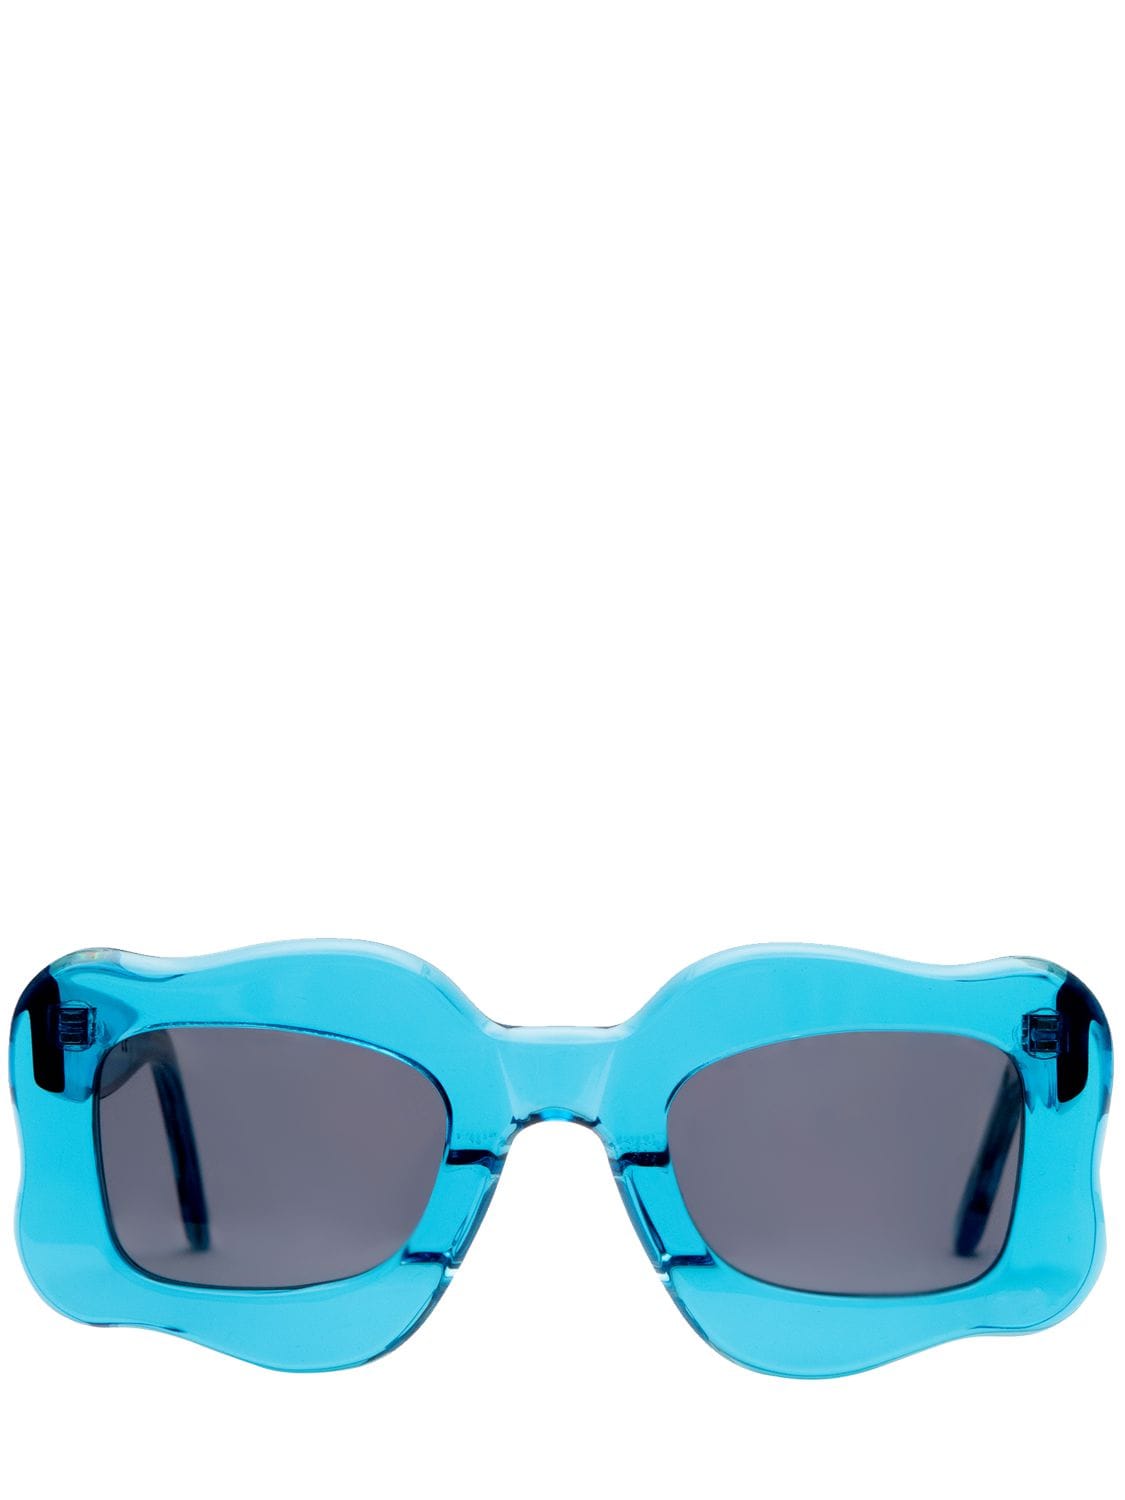 Bonsai Sunglasses In Blue